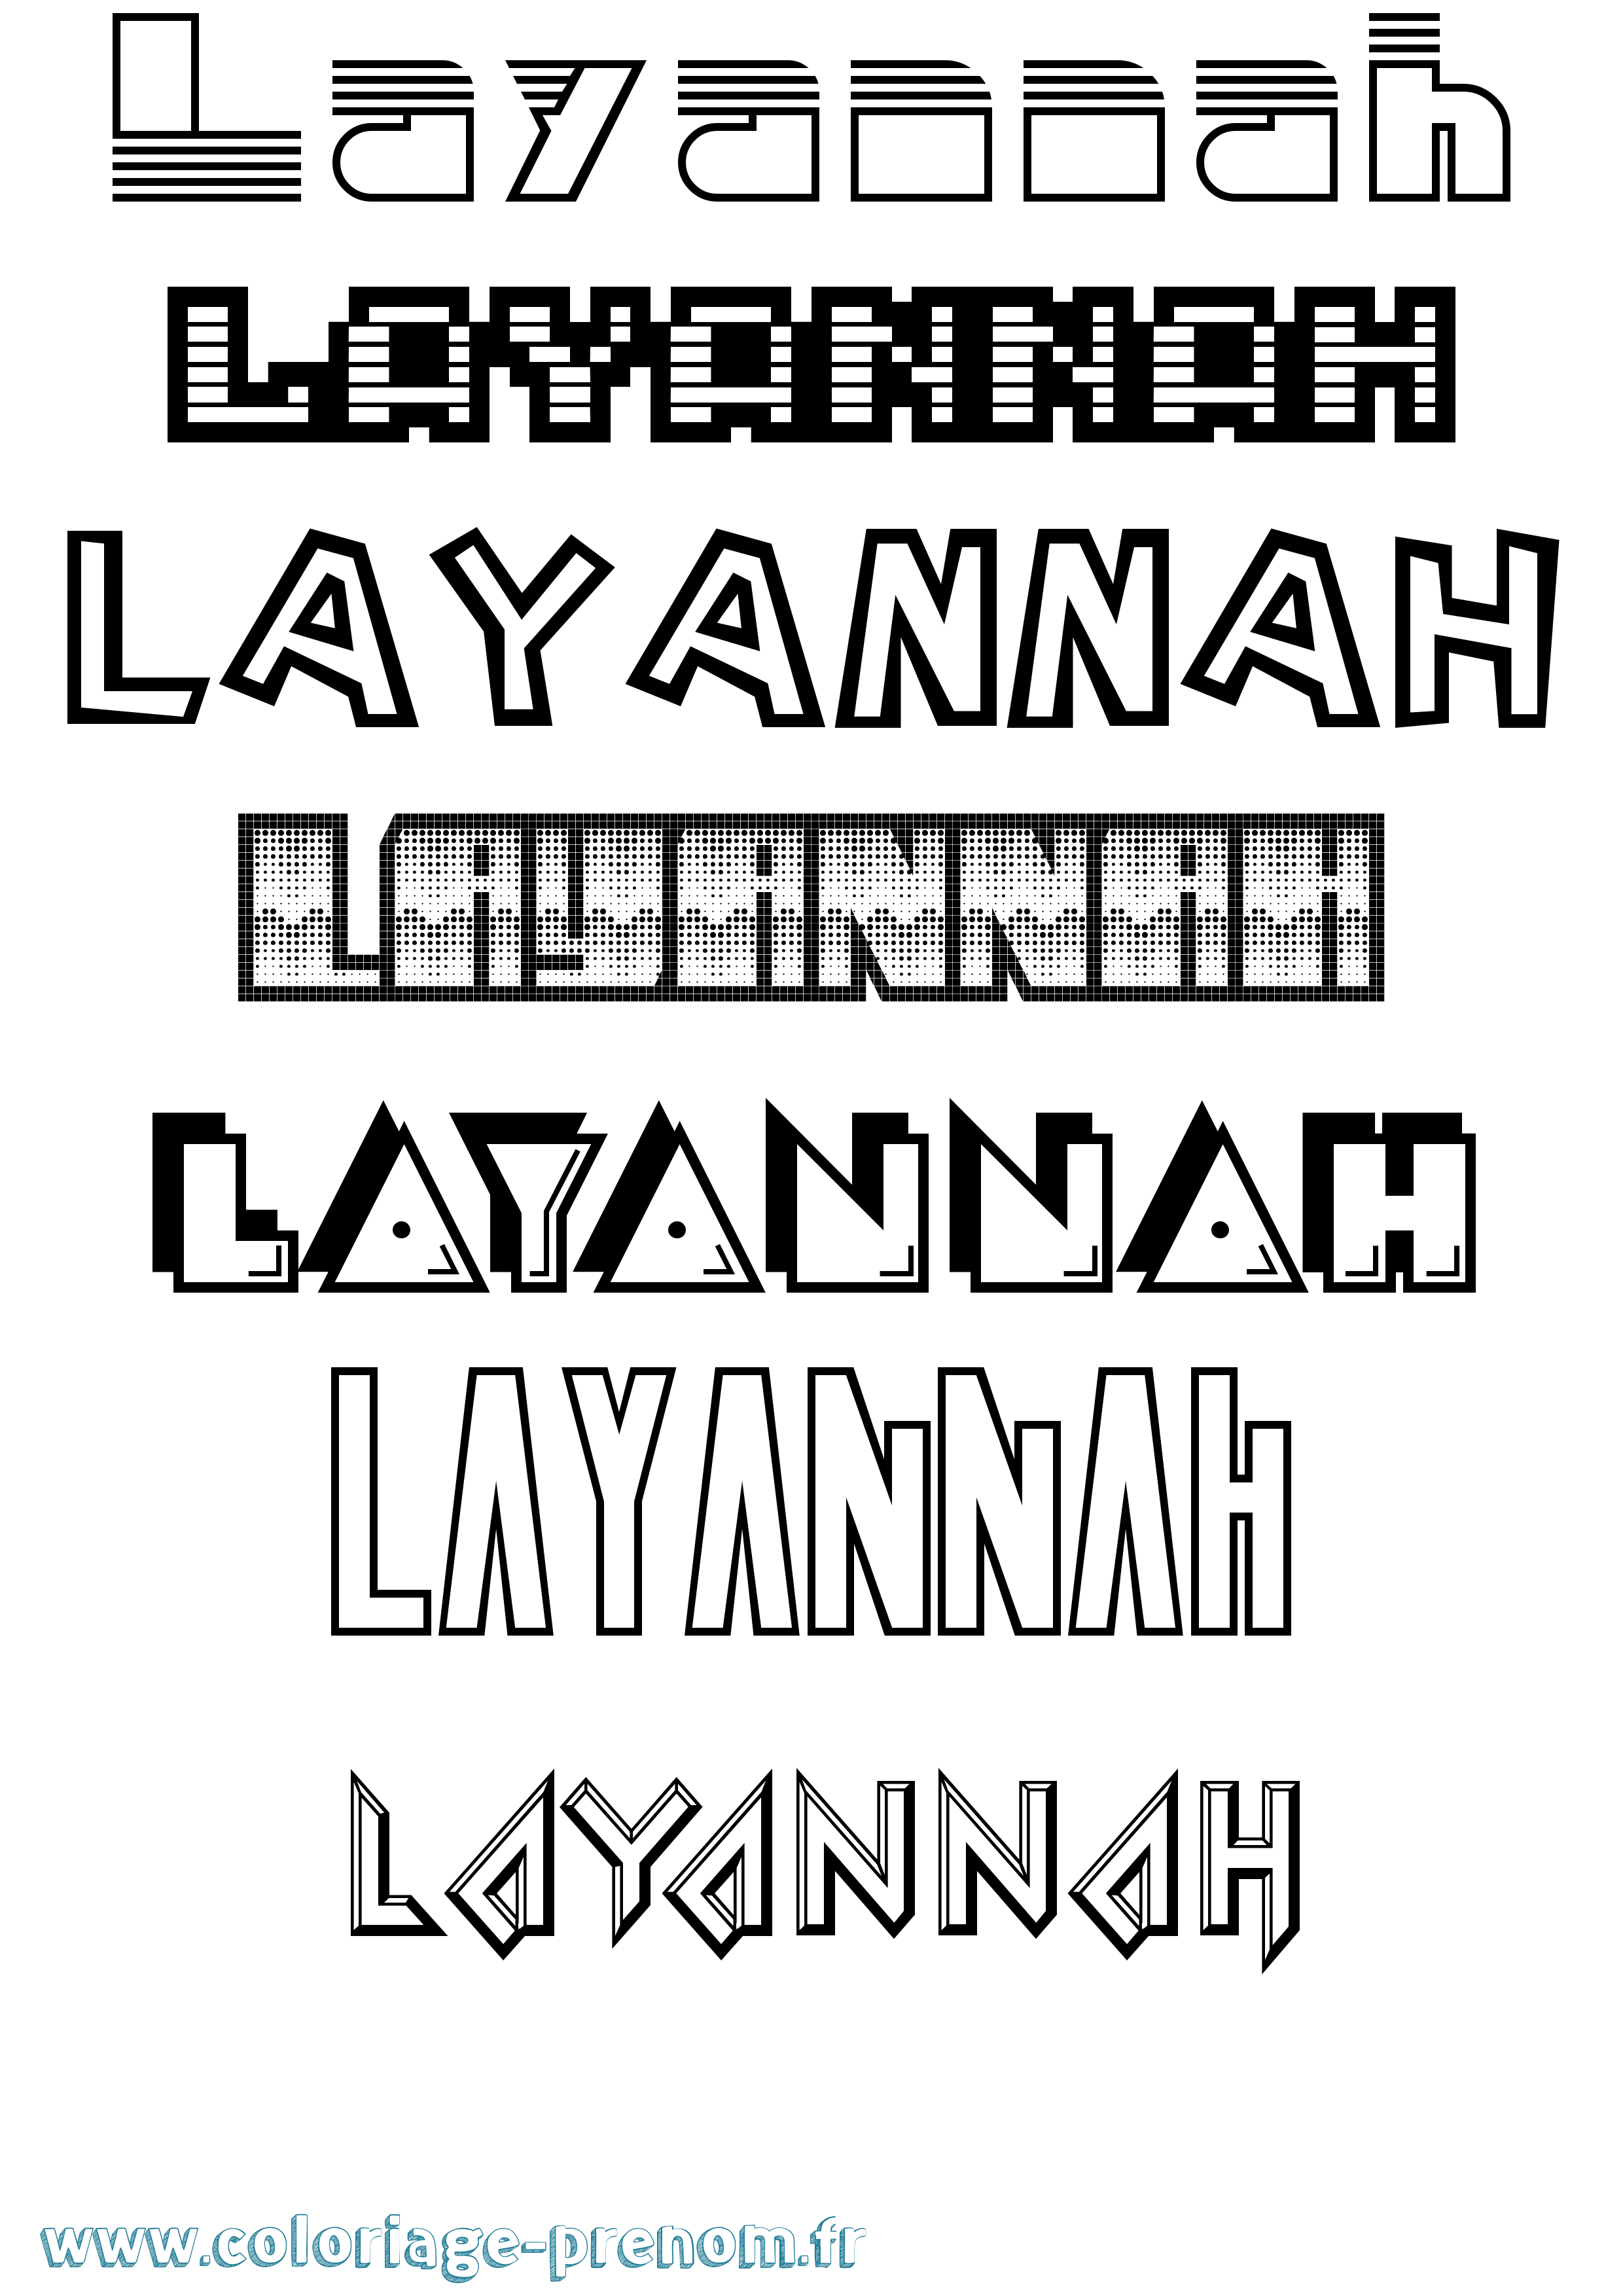 Coloriage prénom Layannah Jeux Vidéos